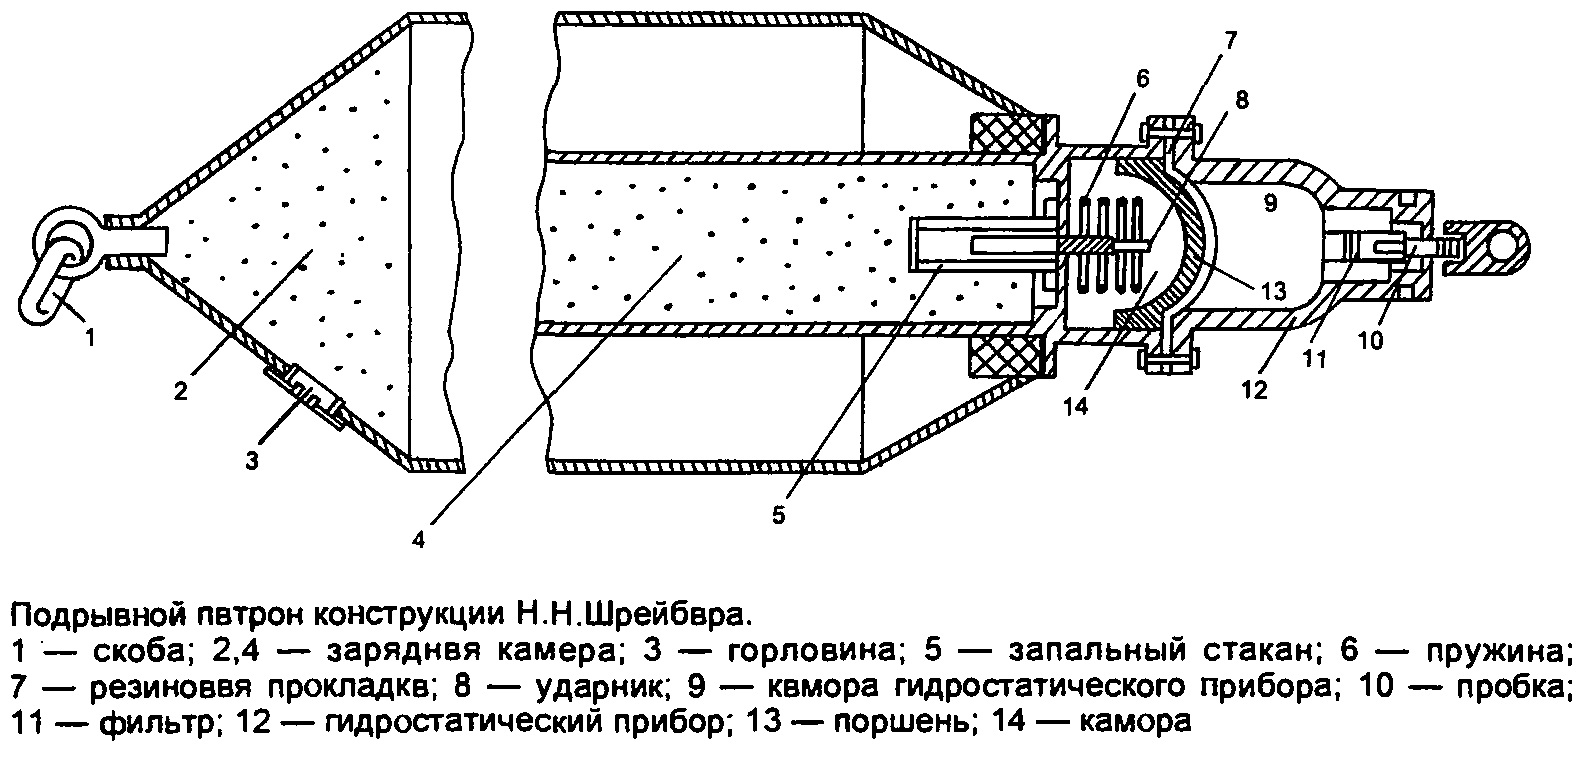 Позиционные противолодочные средства в Российском флоте (1904-1917 годы)